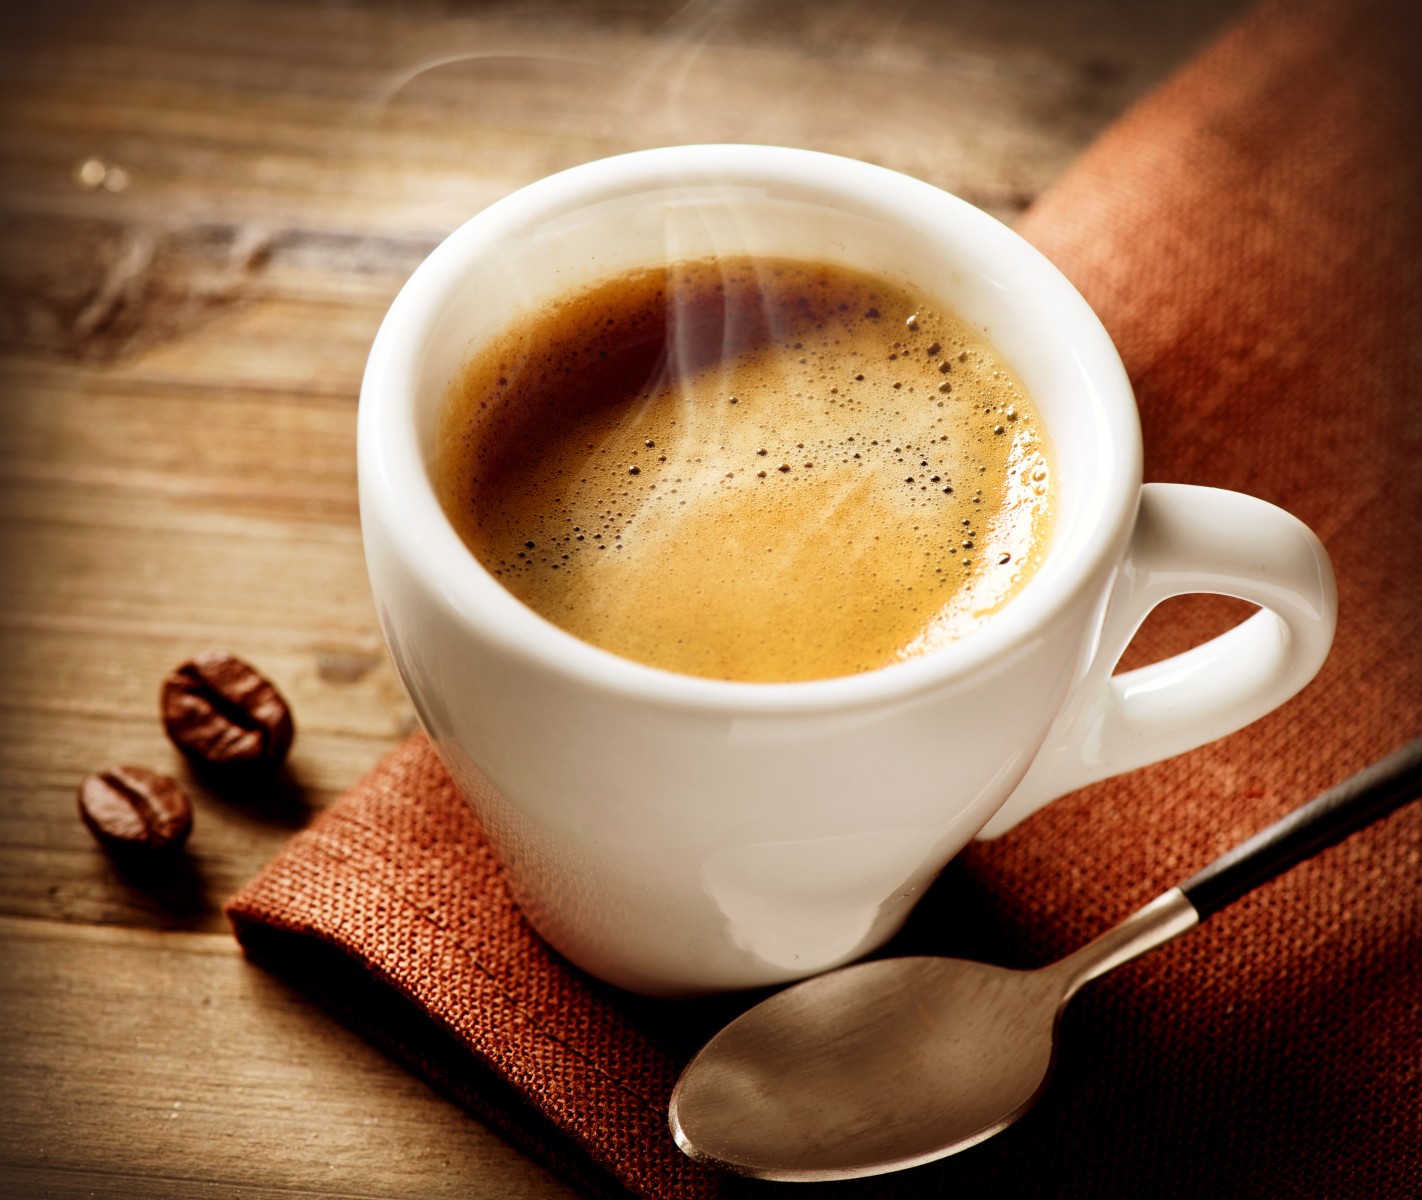 Ở Bồ Đào Nha, 1 đô la bạn có thể thưởng thức được một tách espresso.